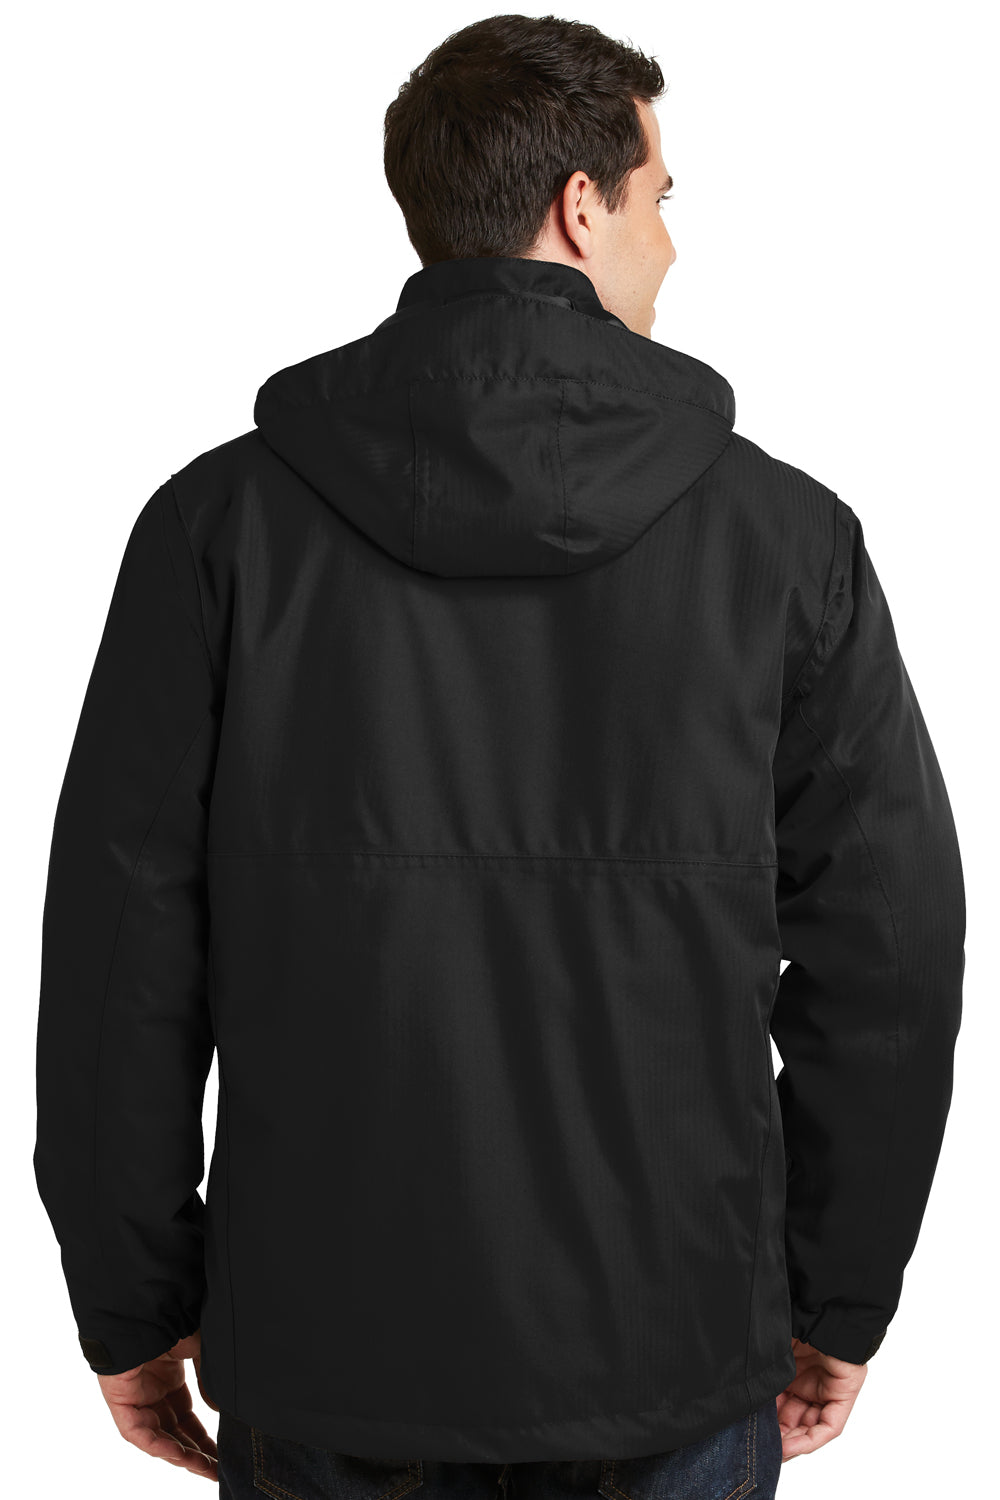 Port Authority J302 Mens Herringbone 3-in-1 Full Zip Hooded Jacket Black Back